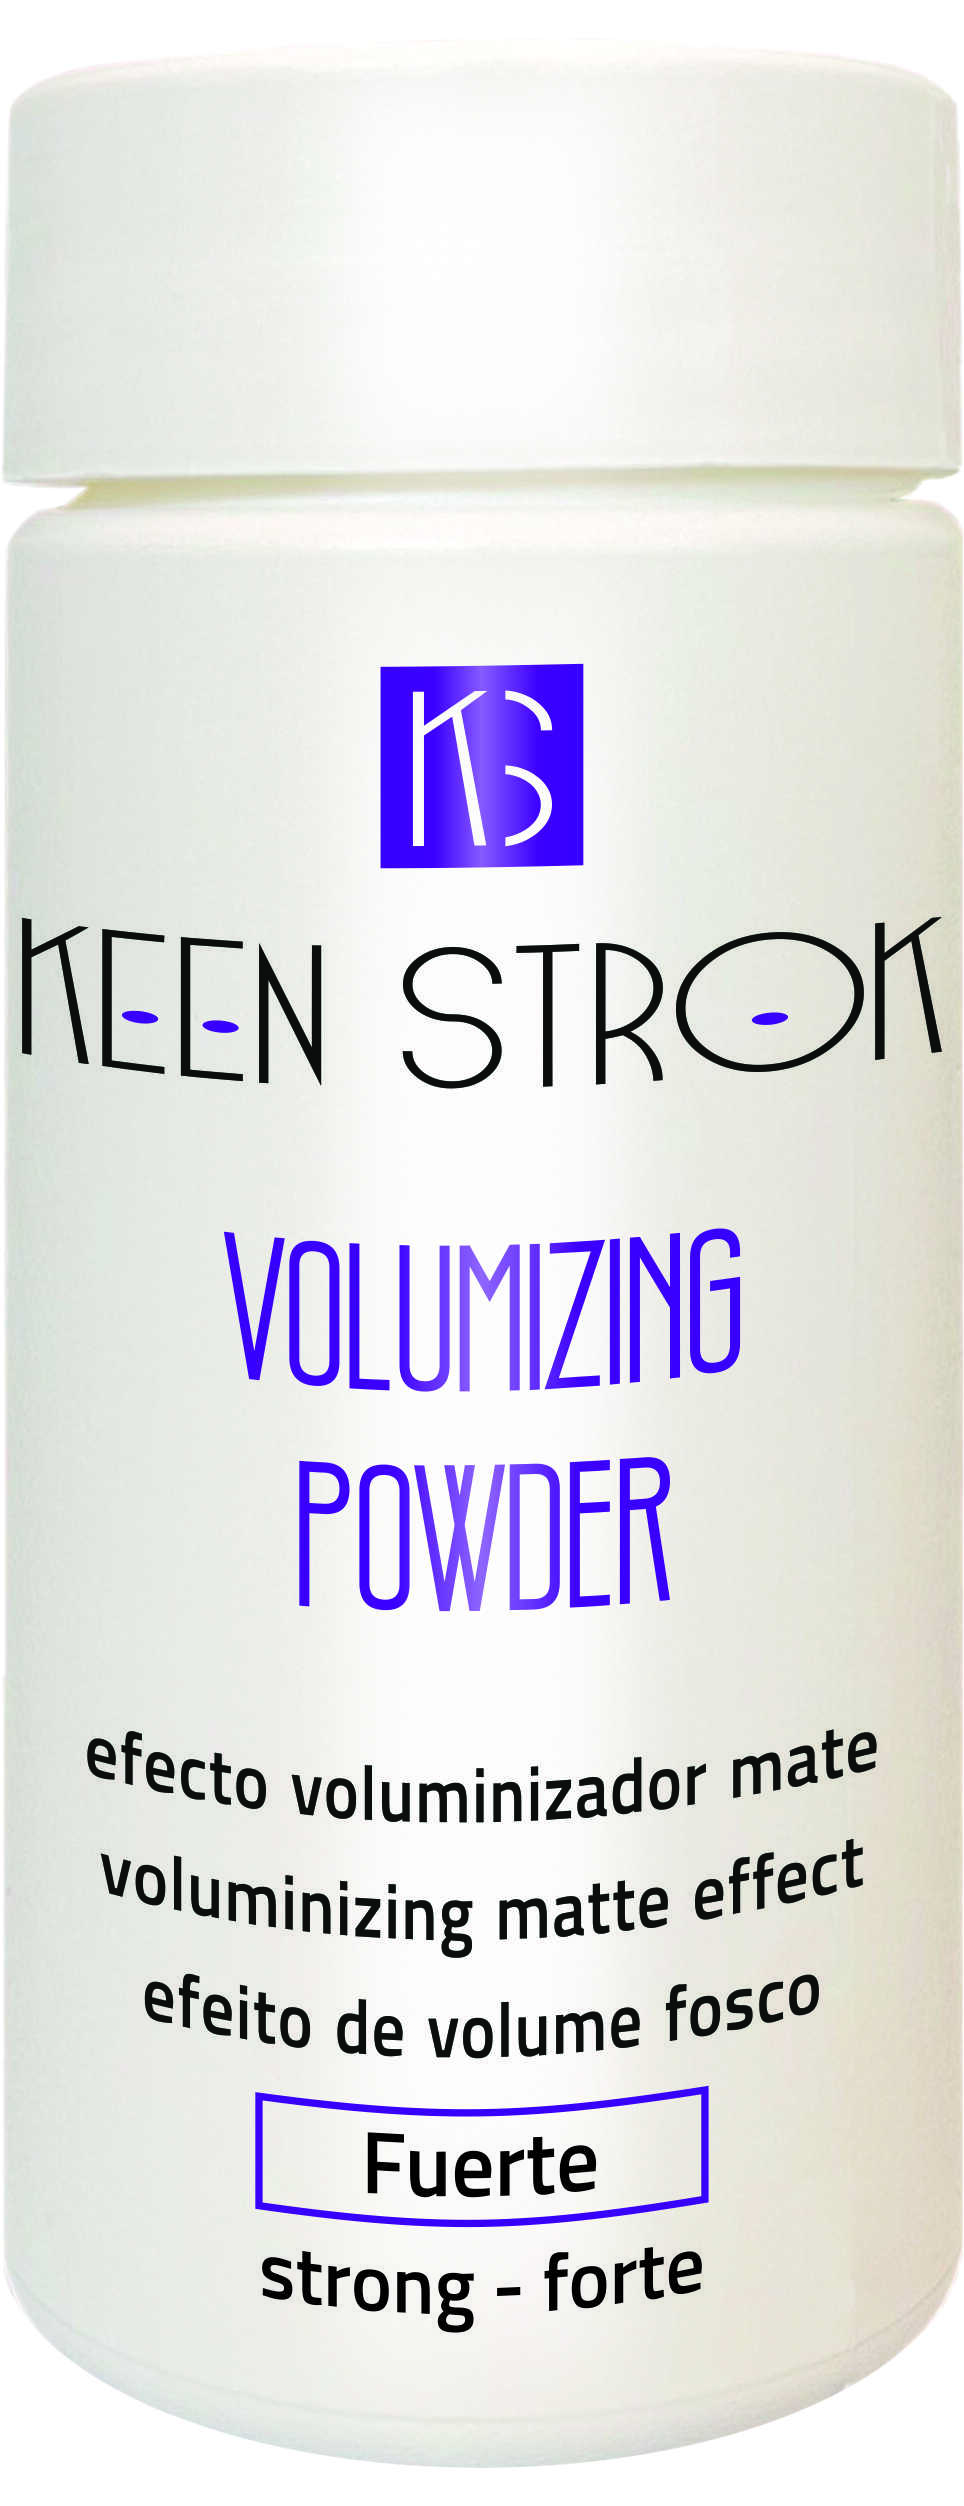 Keen Strok Volumizing Powder - objemový pudr, 12 g